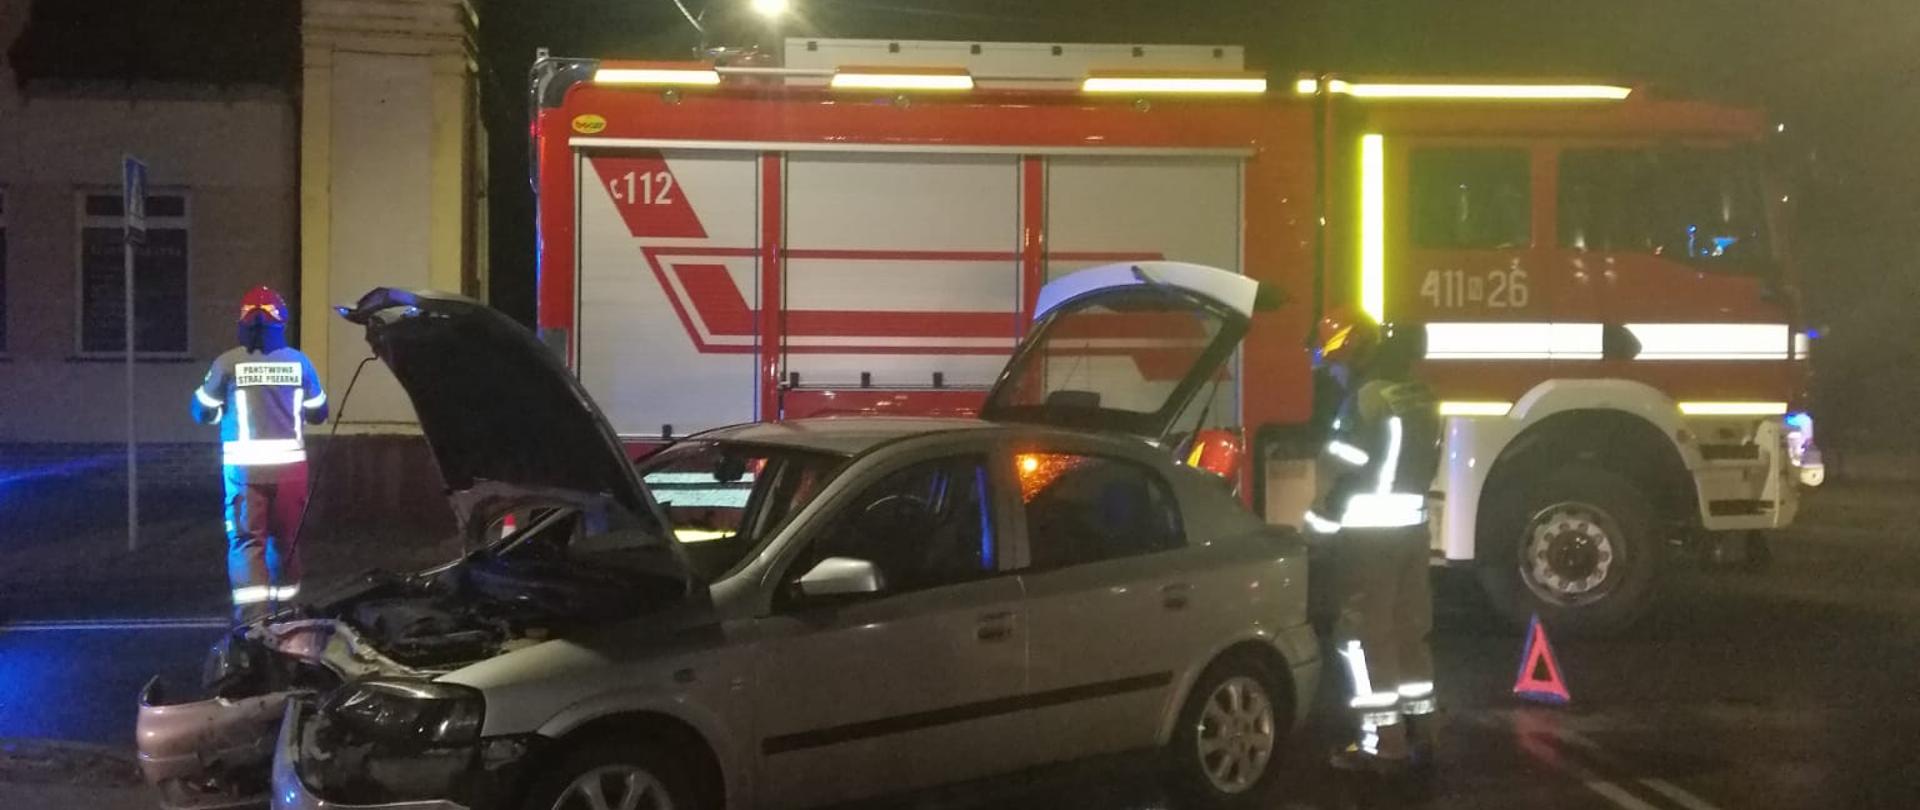 Zdjęcie zdobione nocą. Uszkodzone srebrne auto z otwarta maska i klapą tylną. Za pojazdem stoi samochód pożarniczy i strażacy.